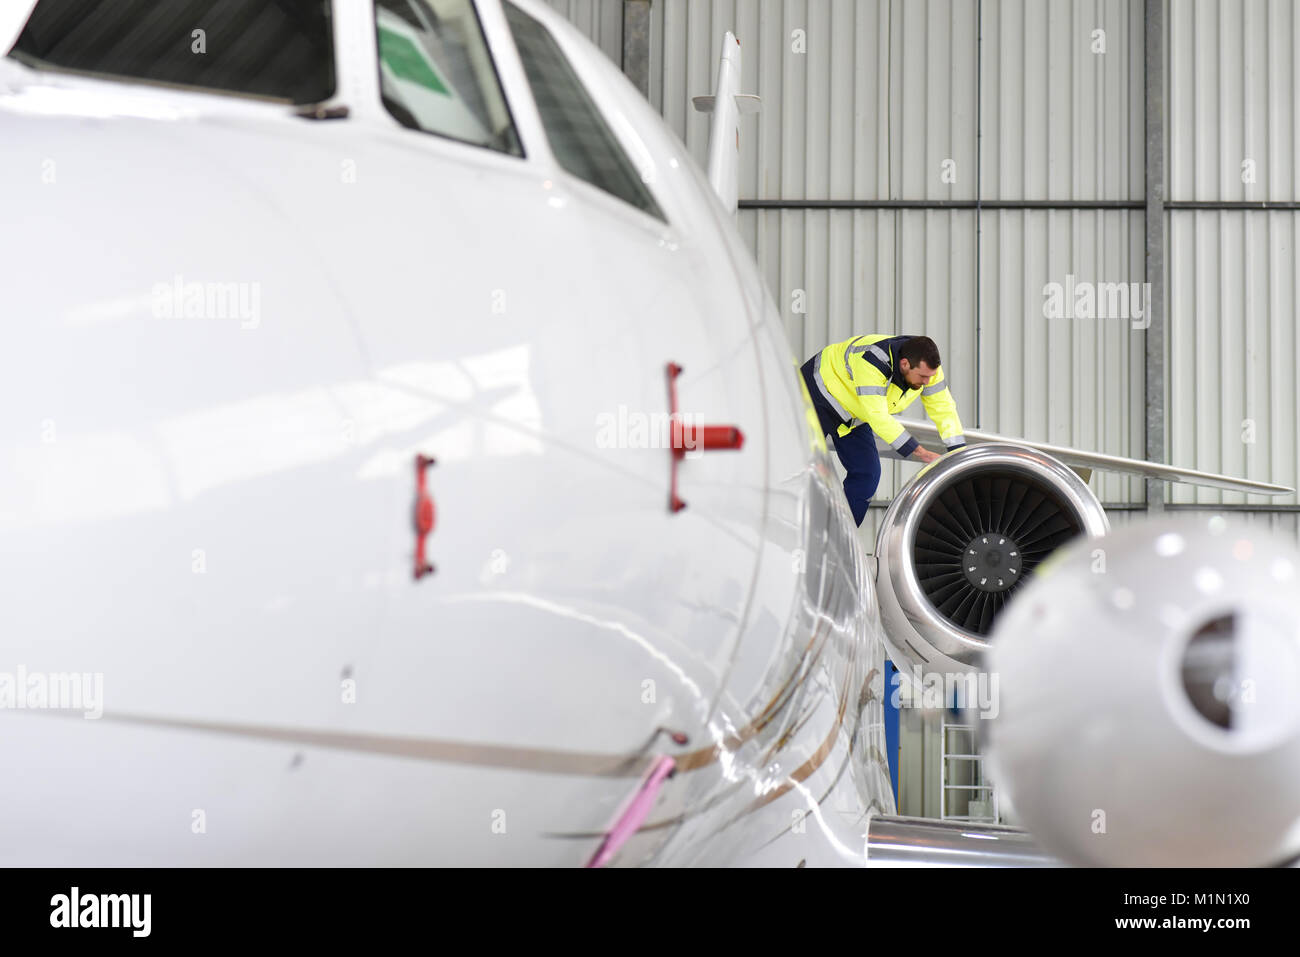 Il personale di terra dell'aeroporto controlla la tecnologia e la sicurezza di un getto in hangar Foto Stock